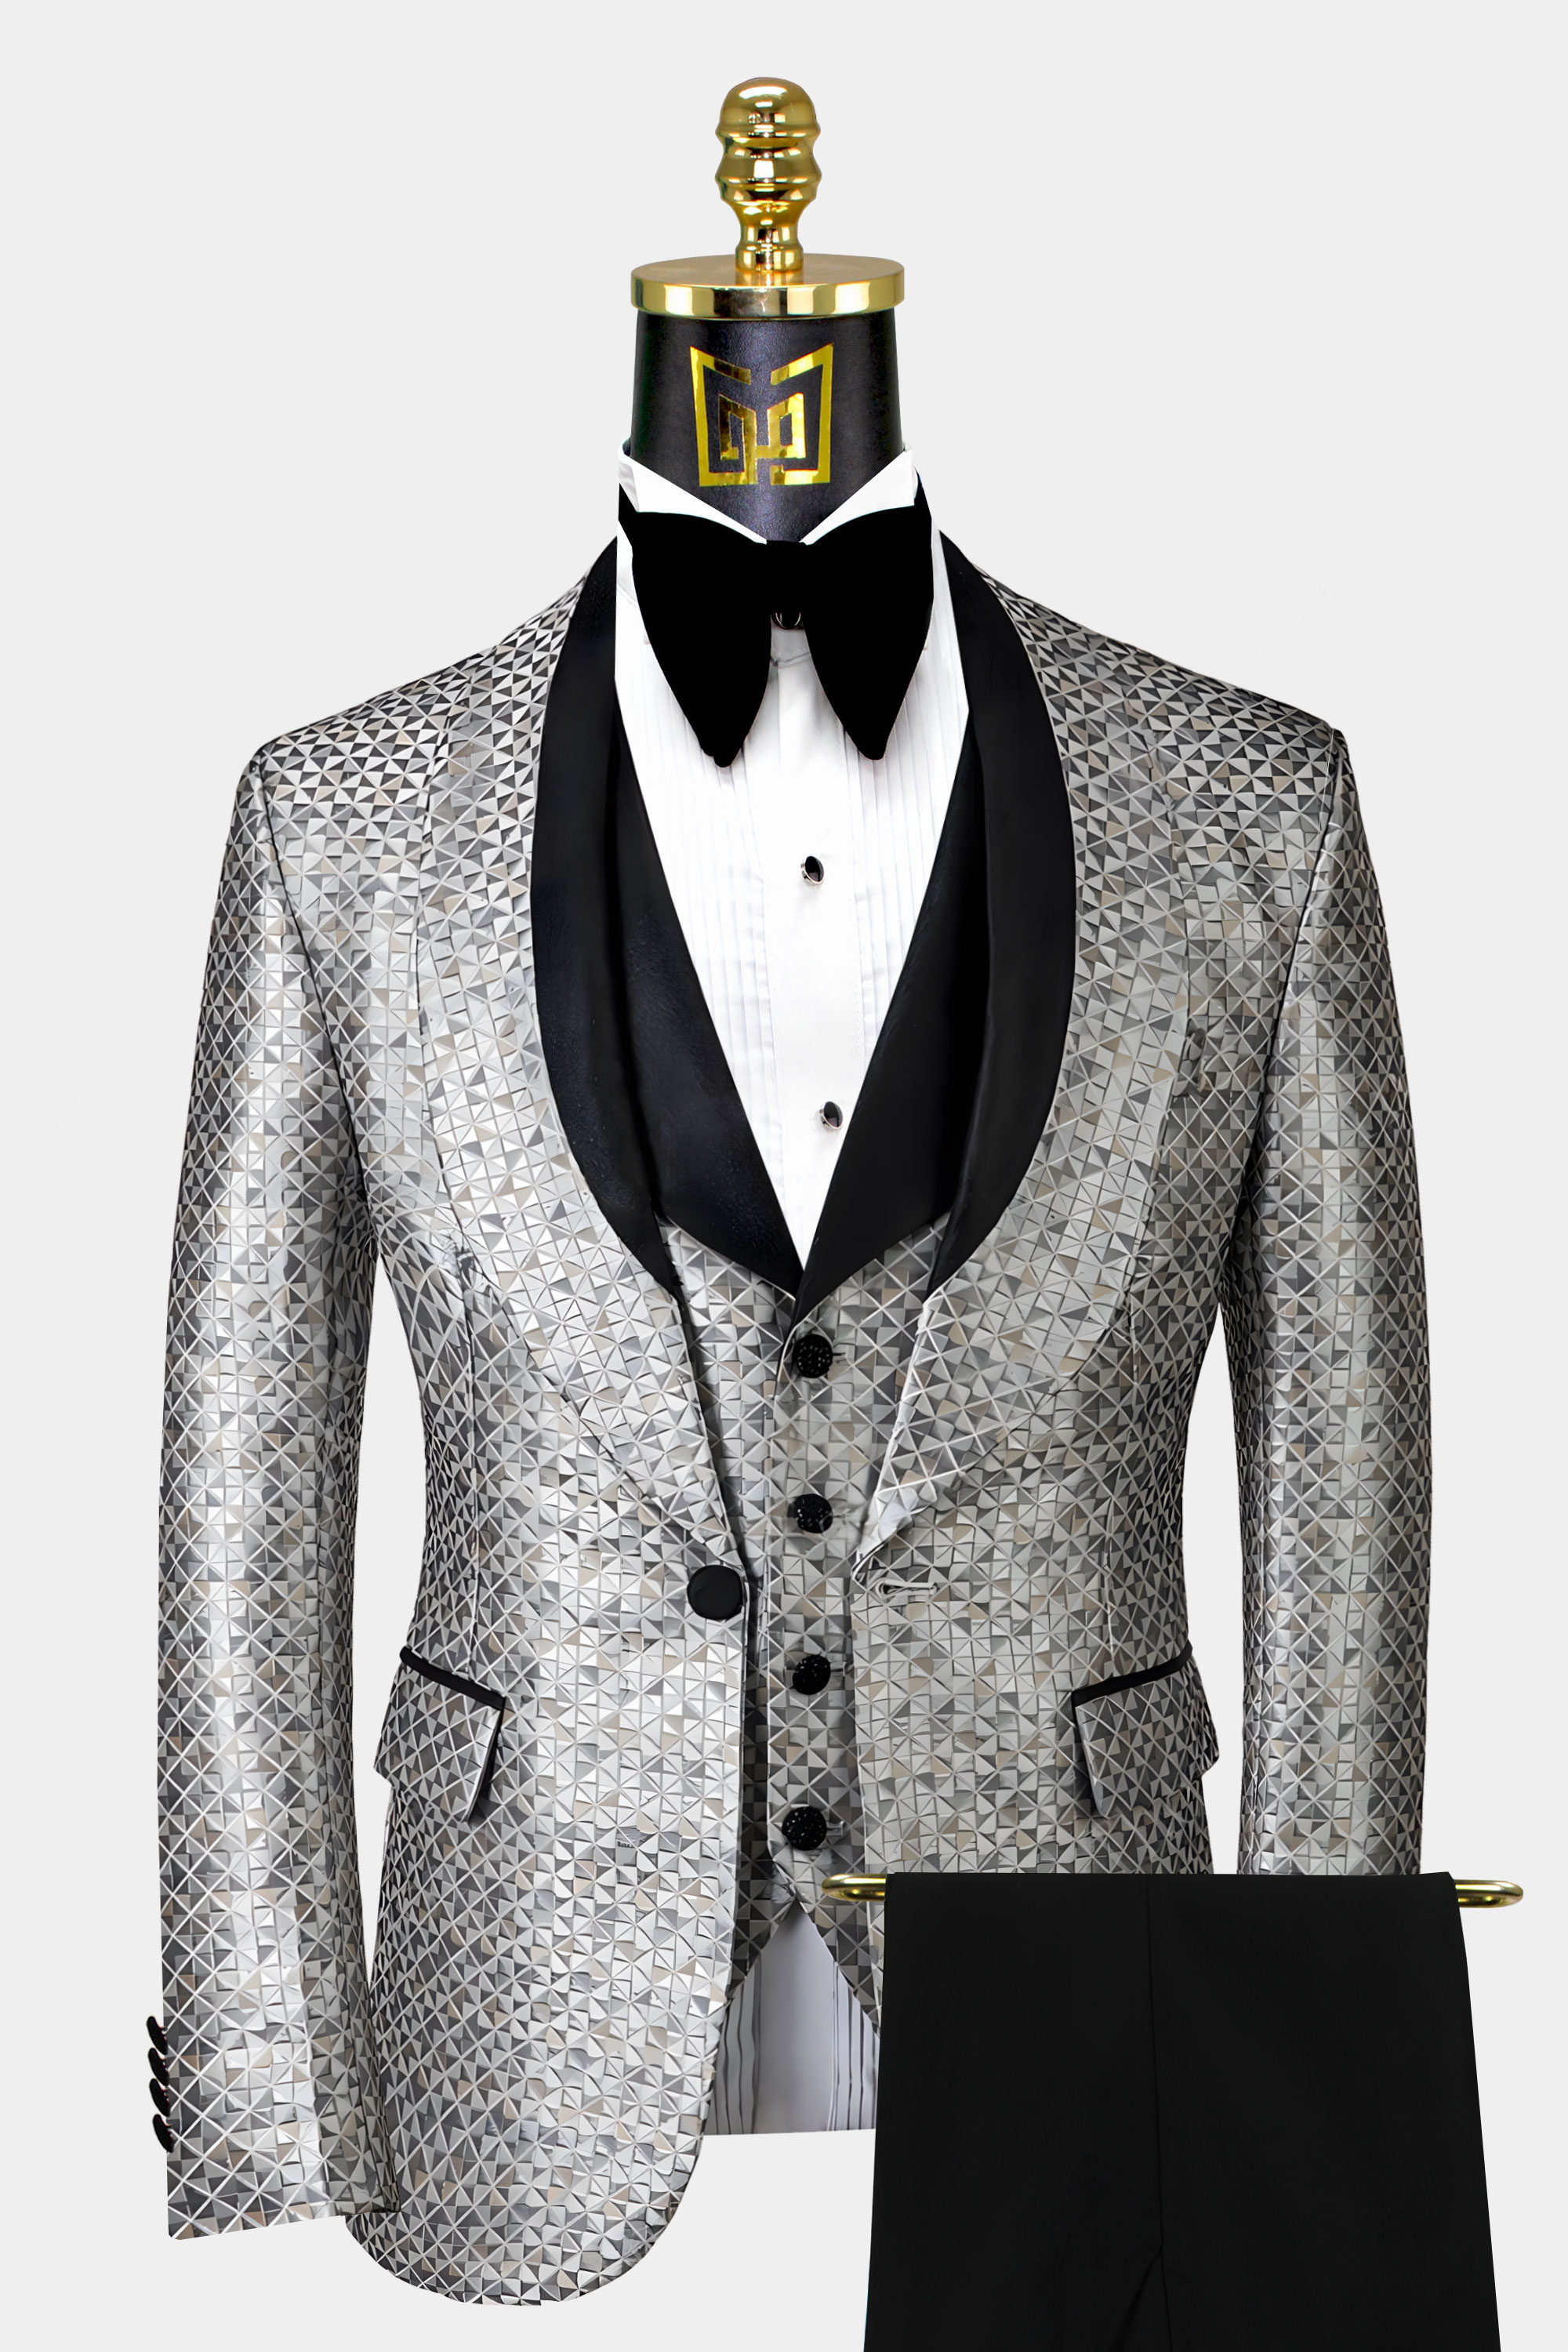 Silver Grey Tuxedo Suit - 3 Piece | Gentleman's Guru